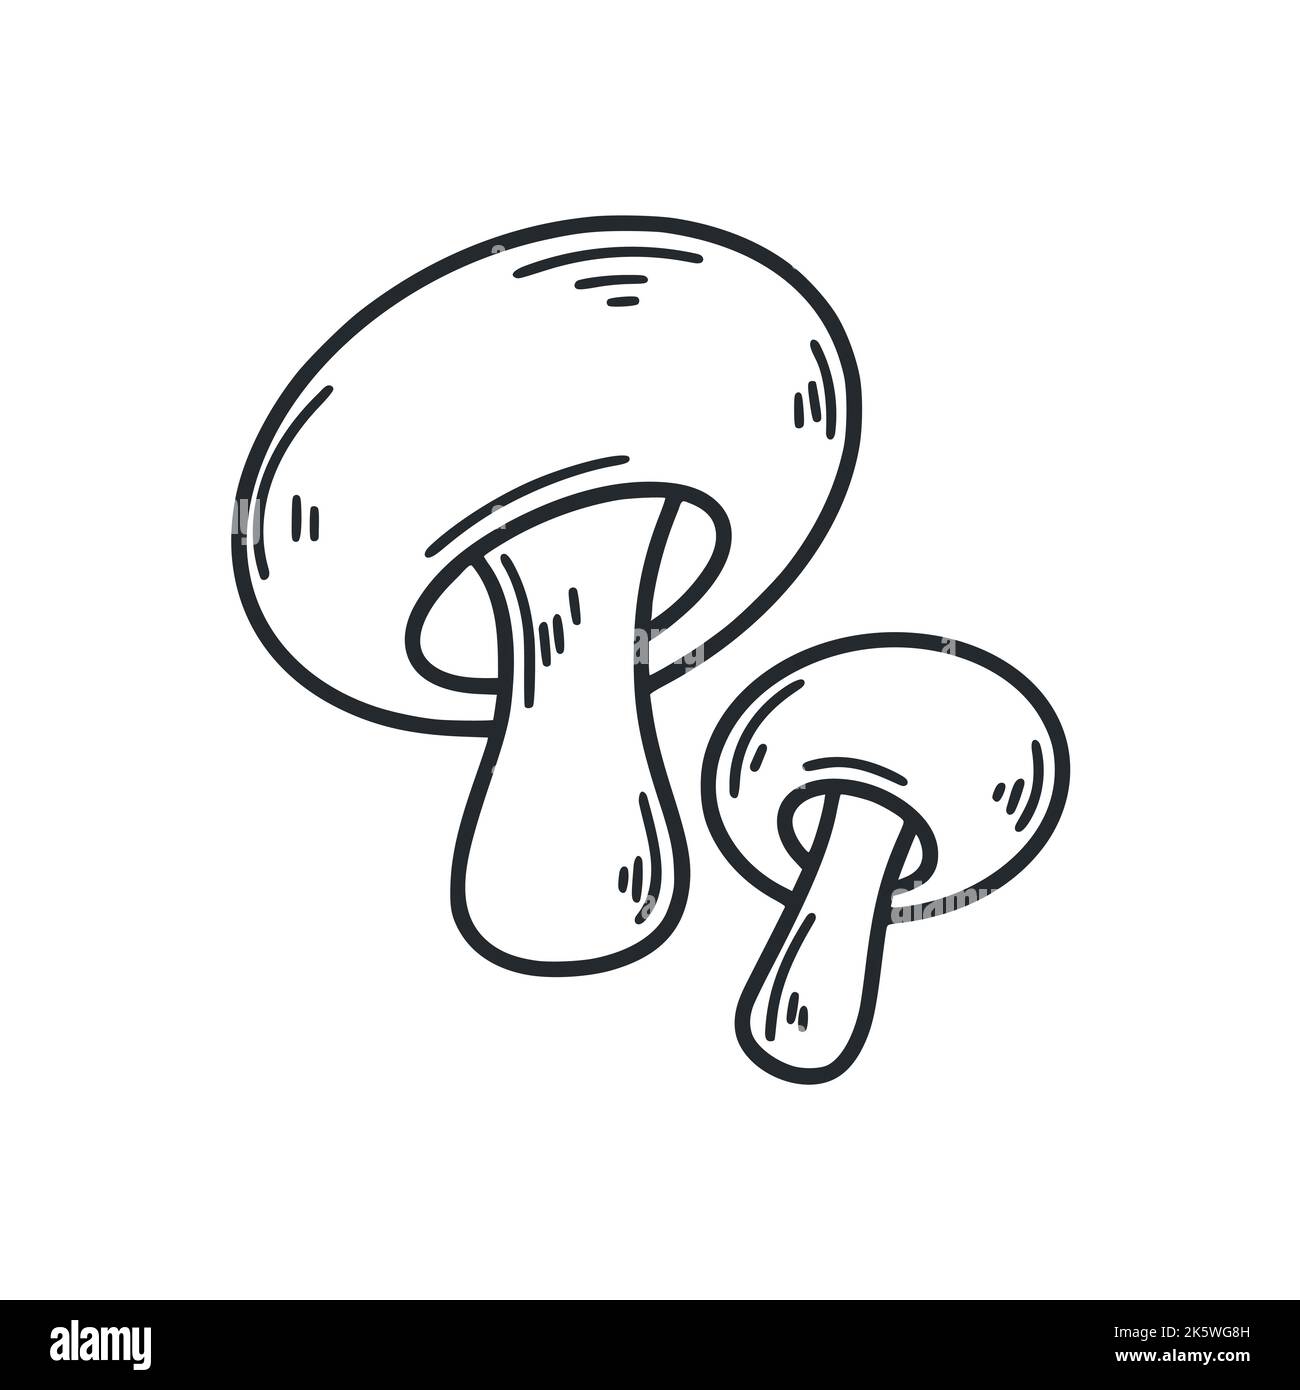 Gli smussi disegnano l'illustrazione del vettore isolato. Contorno monocromatico di funghi commestibili. Cibo sano biologico mano disegnato doodle Illustrazione Vettoriale